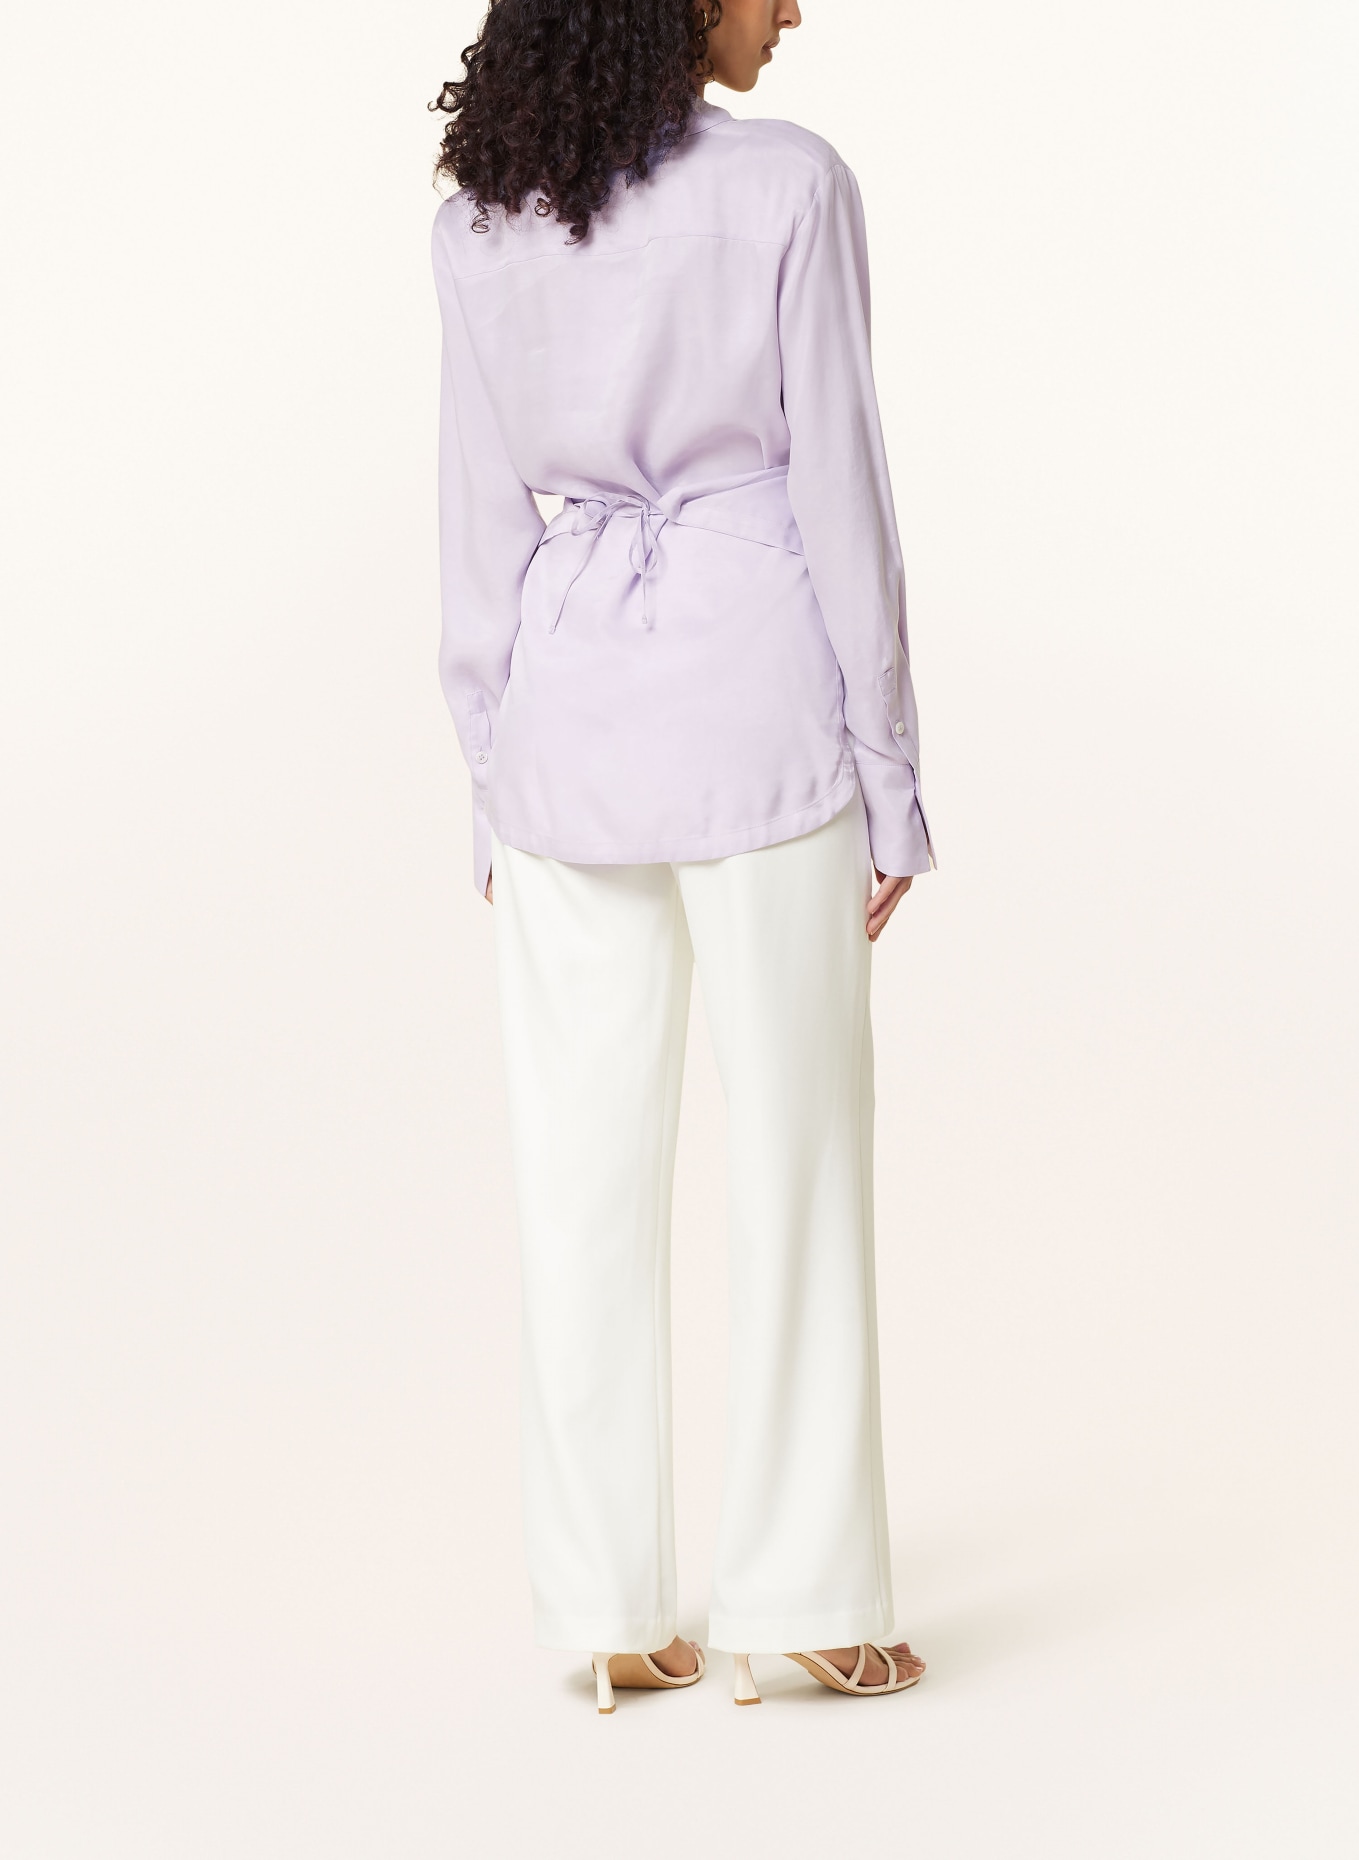 VANILIA Shirt blouse, Color: 6369 Purple rose (Image 3)